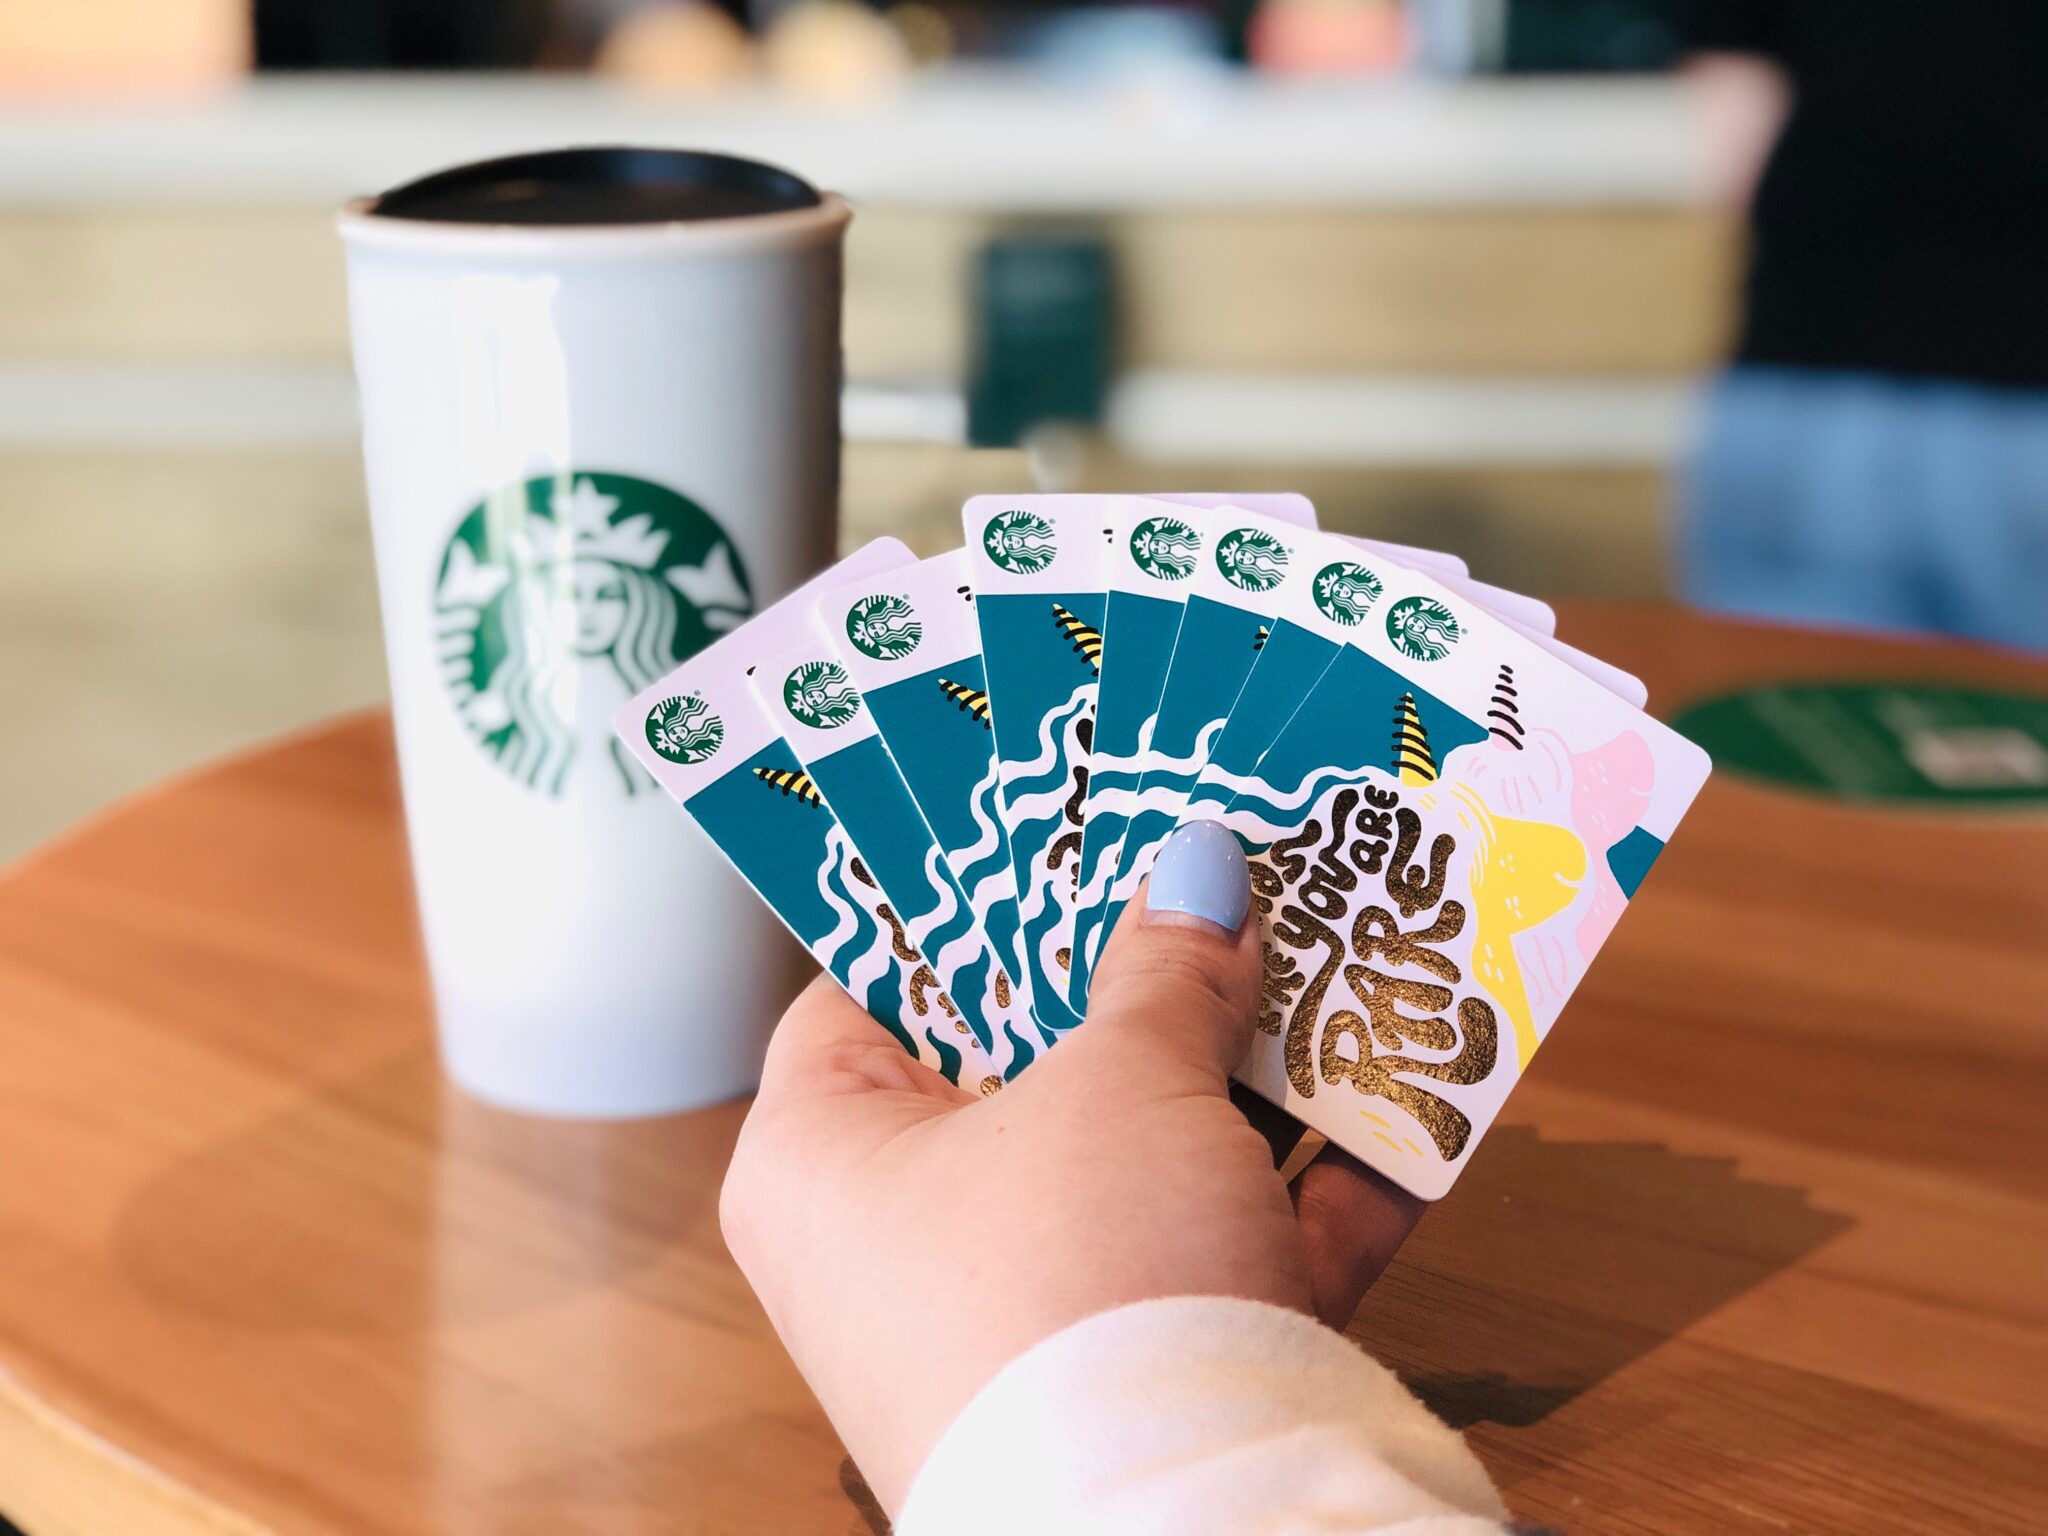 Pošiljanje Starbucks Joy: vodnik za pošiljanje darilnih kartic prek besedila